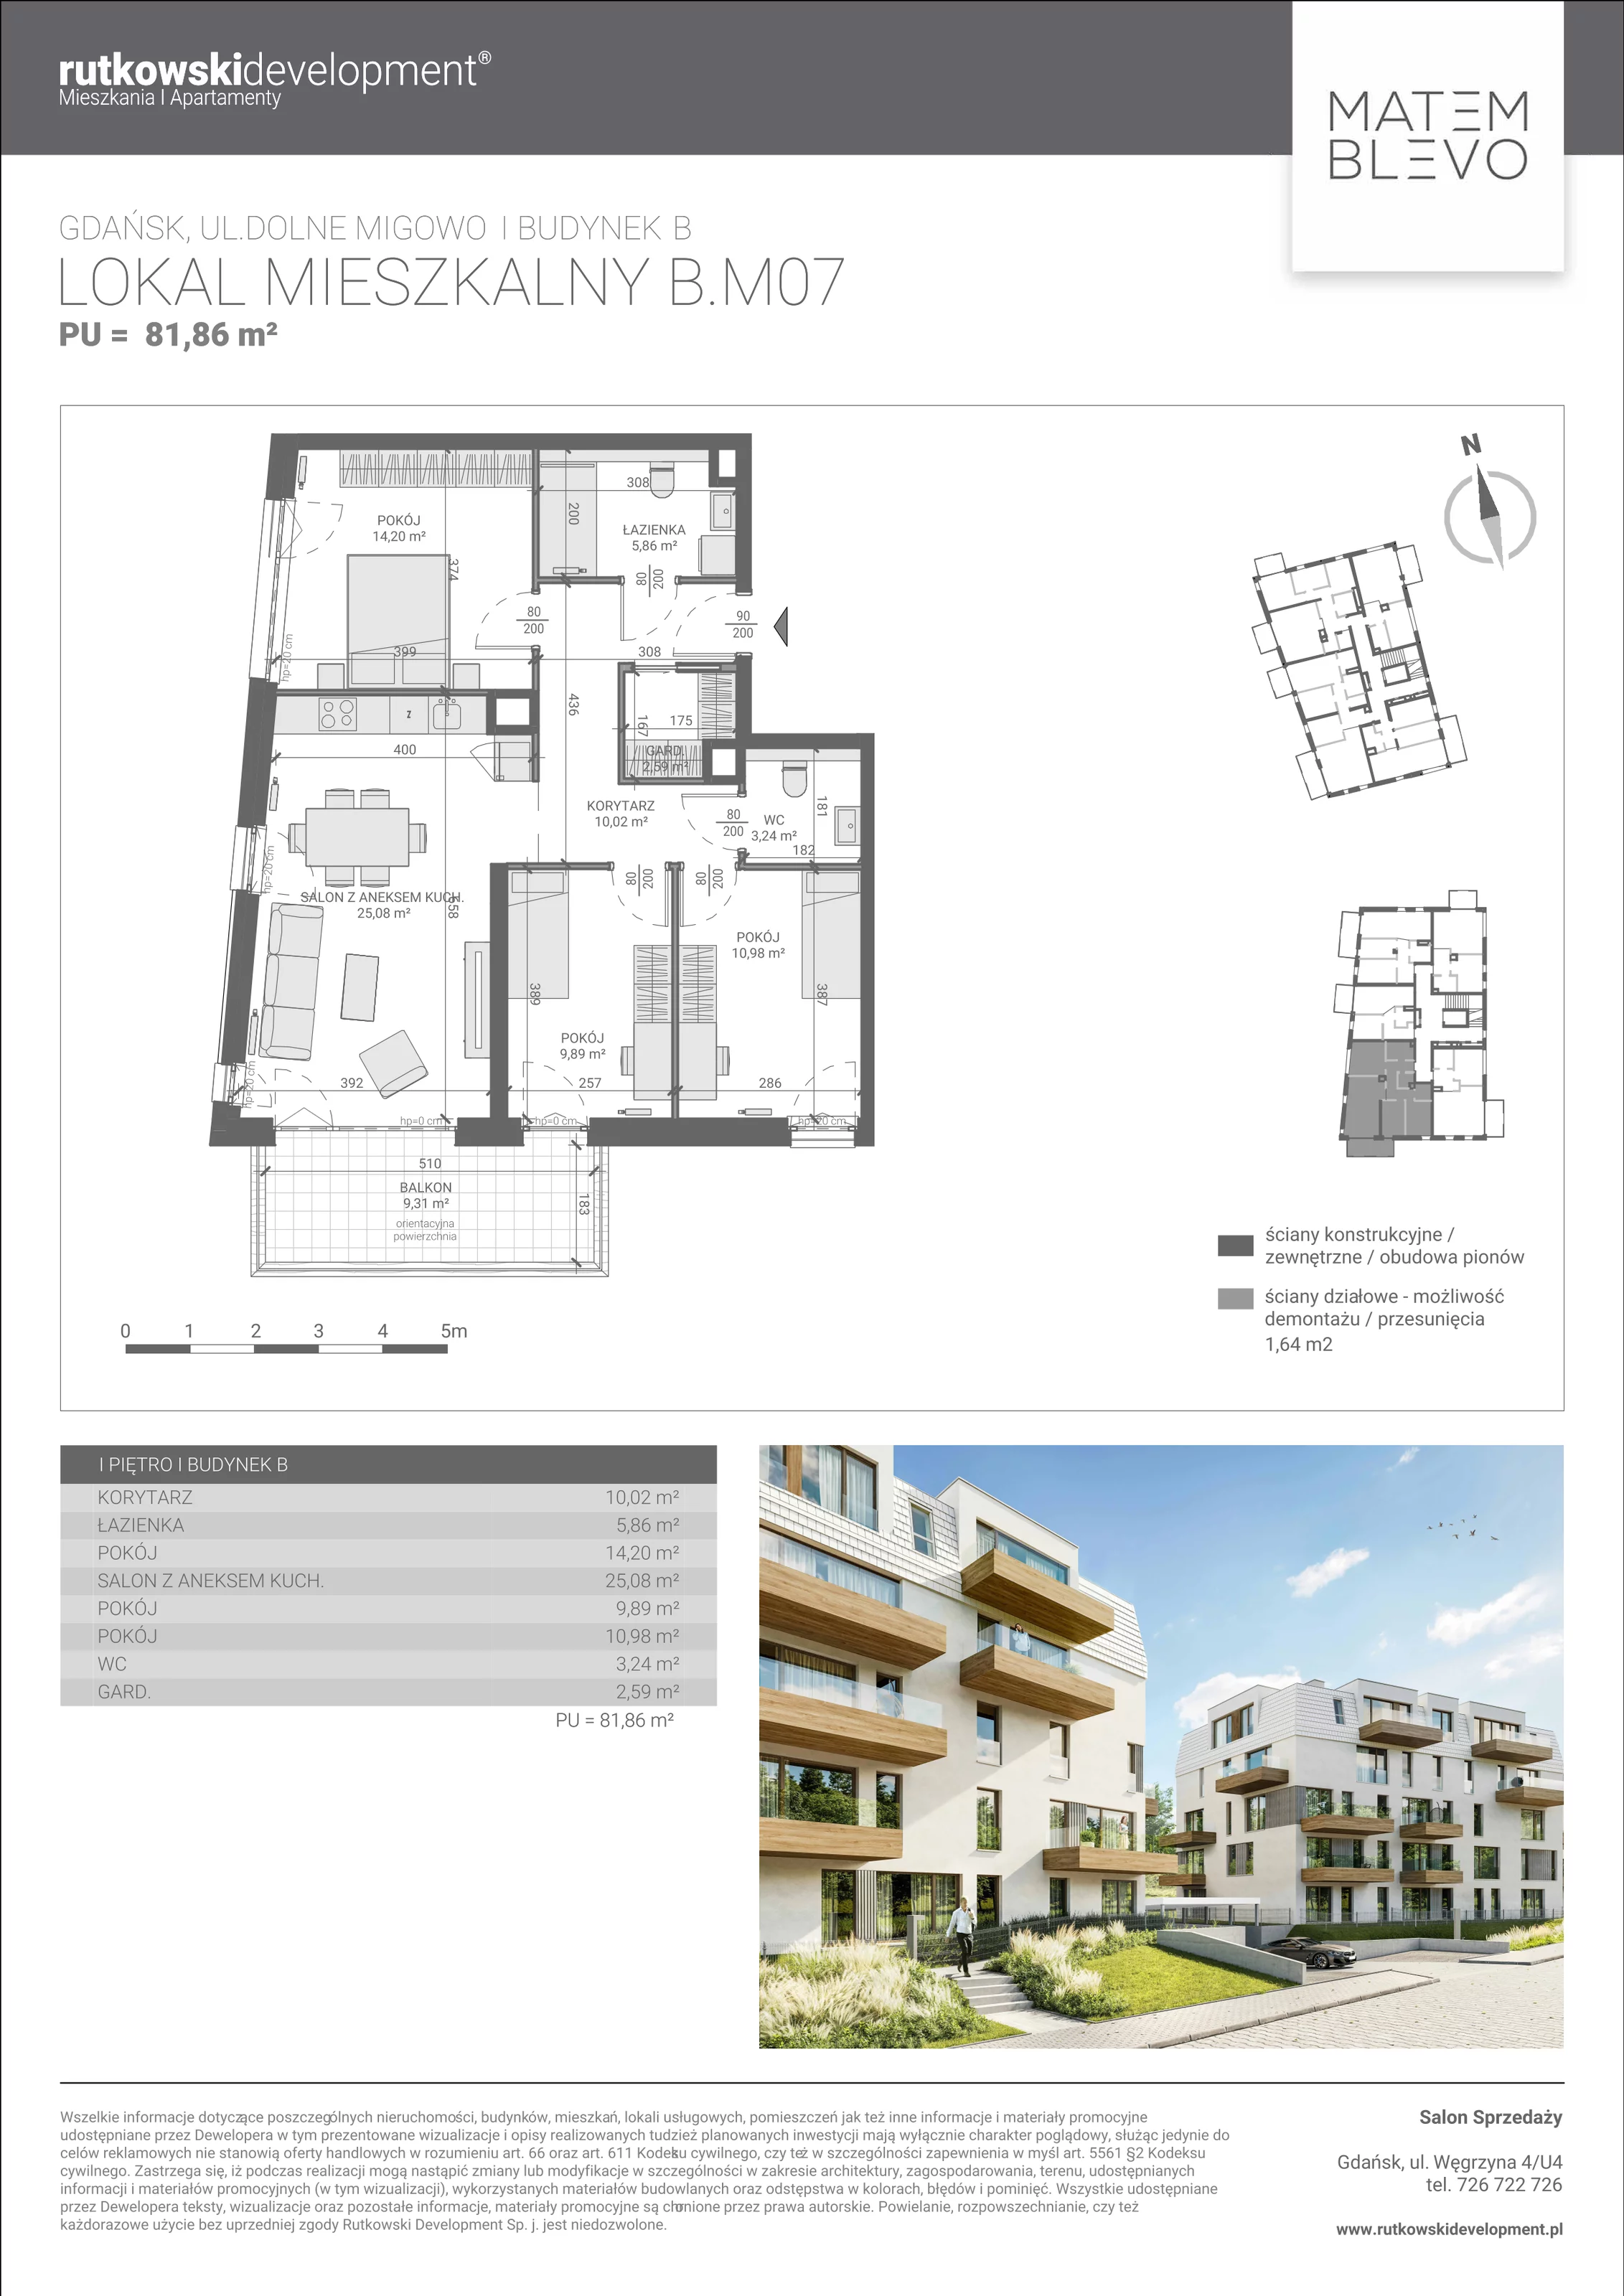 Mieszkanie 81,86 m², piętro 1, oferta nr B.M07, Matemblevo, Gdańsk, Brętowo, ul. Dolne Migowo 23 D